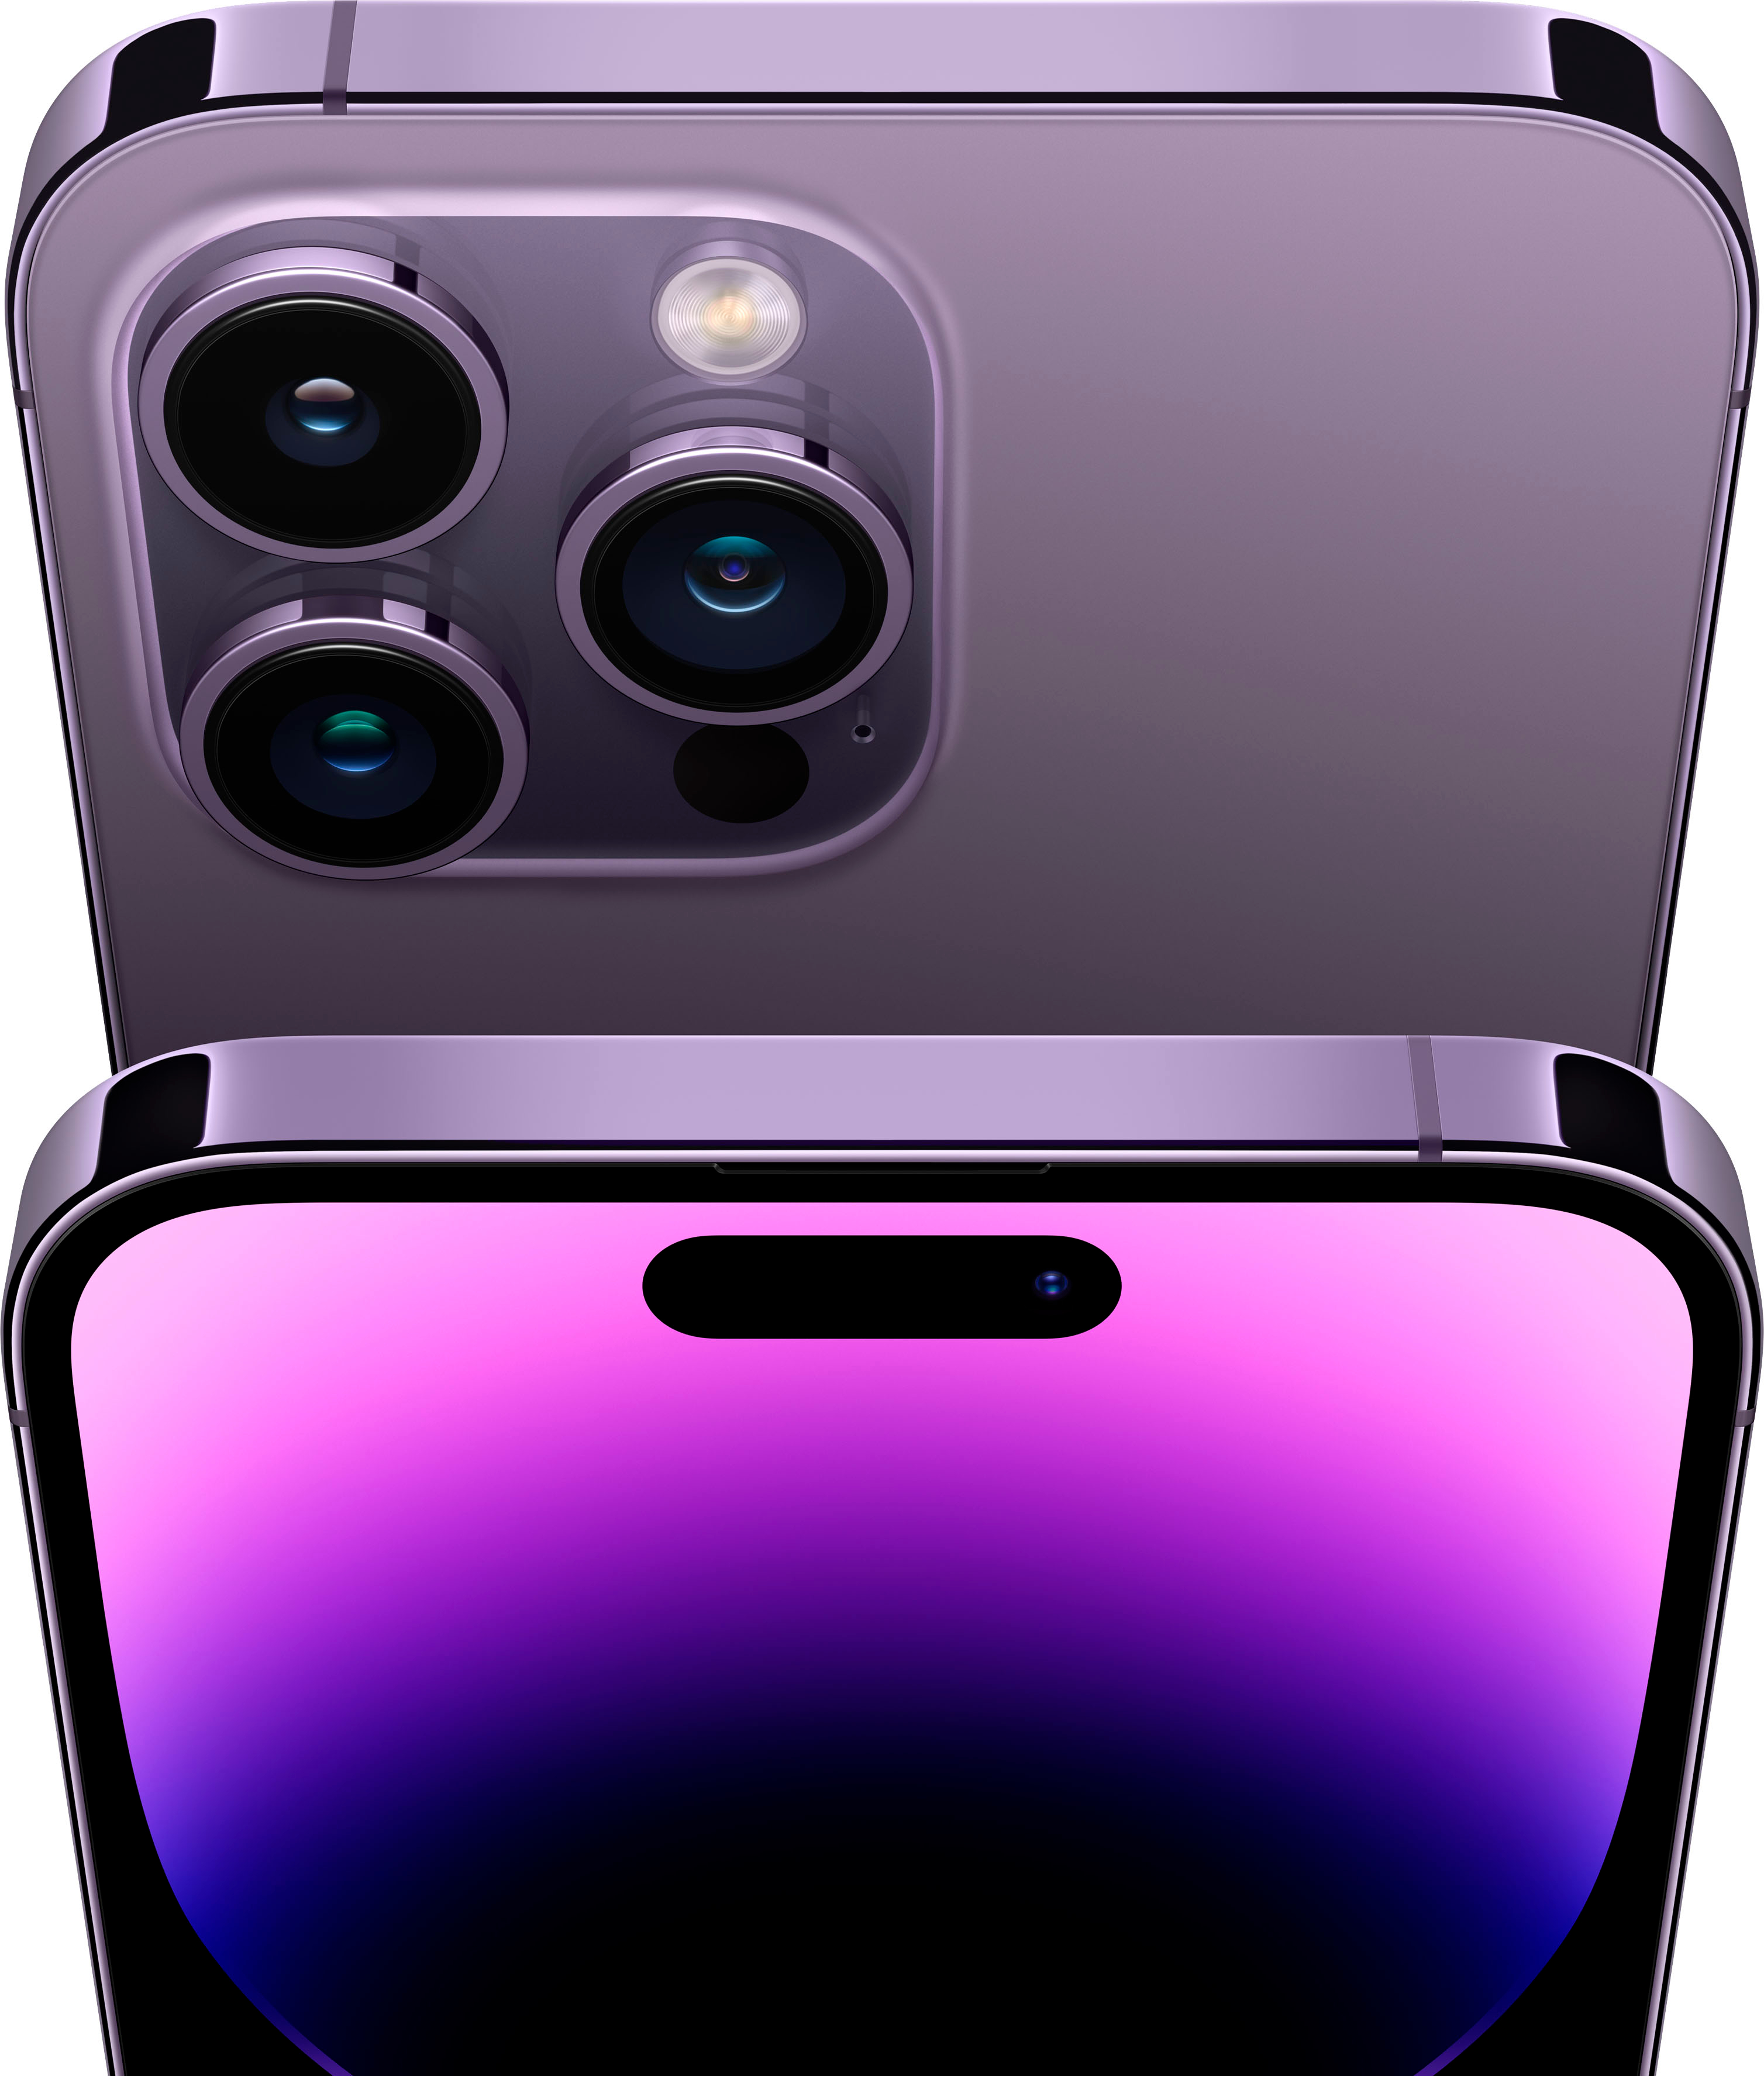 Apple iPhone 14 Pro Max 128GB Deep Purple (Verizon) MQ8R3LL/A 